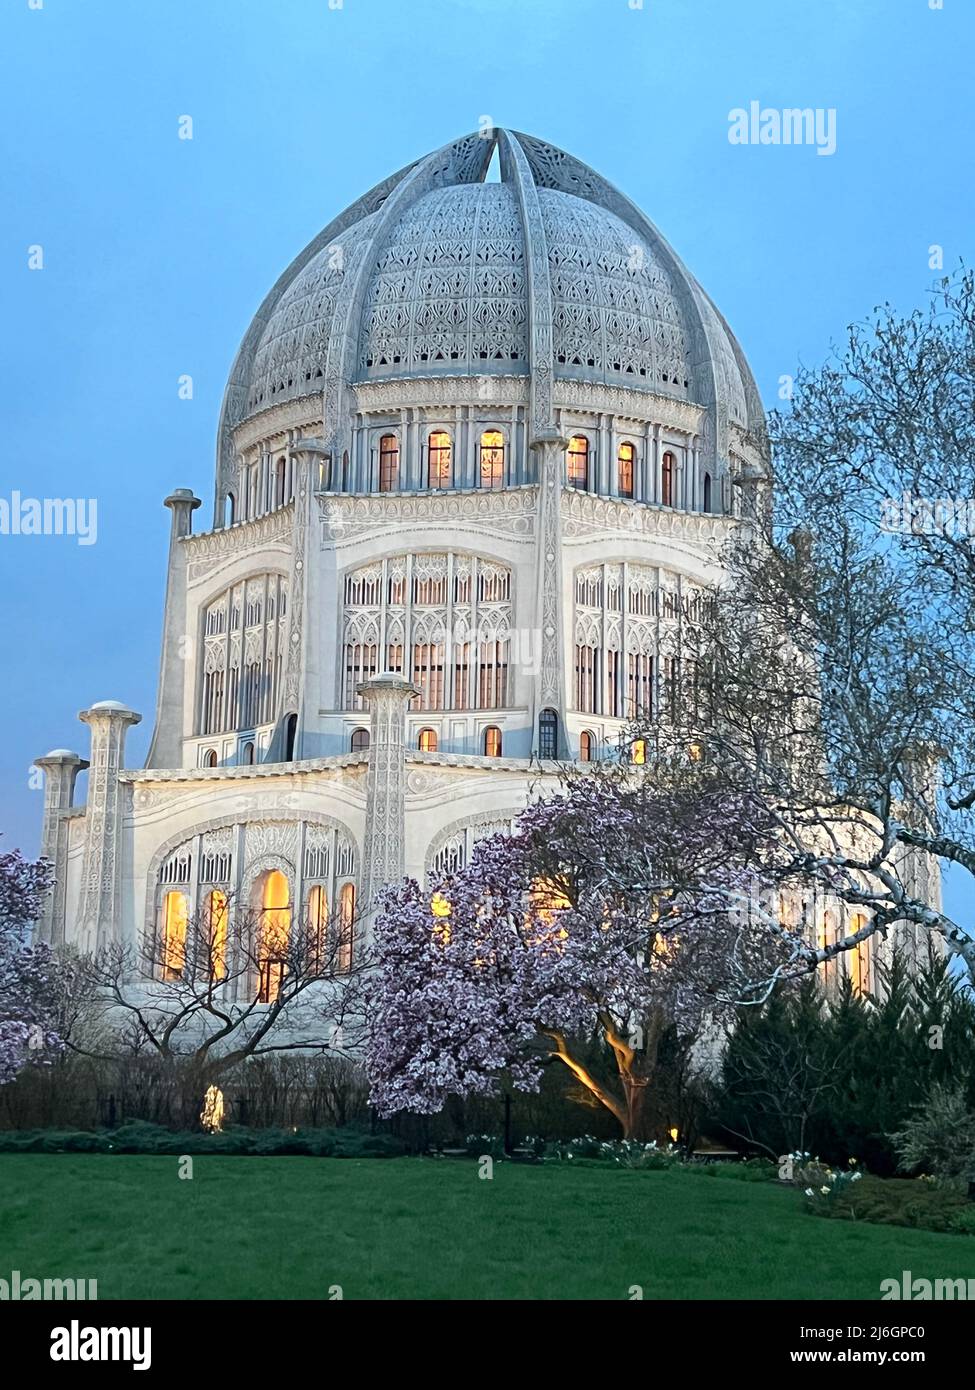 Baha'i Casa di culto in una serata primaverile con alberi fioriti in fiore. Il tempio si trova a Wilmette, Illinois. Foto Stock